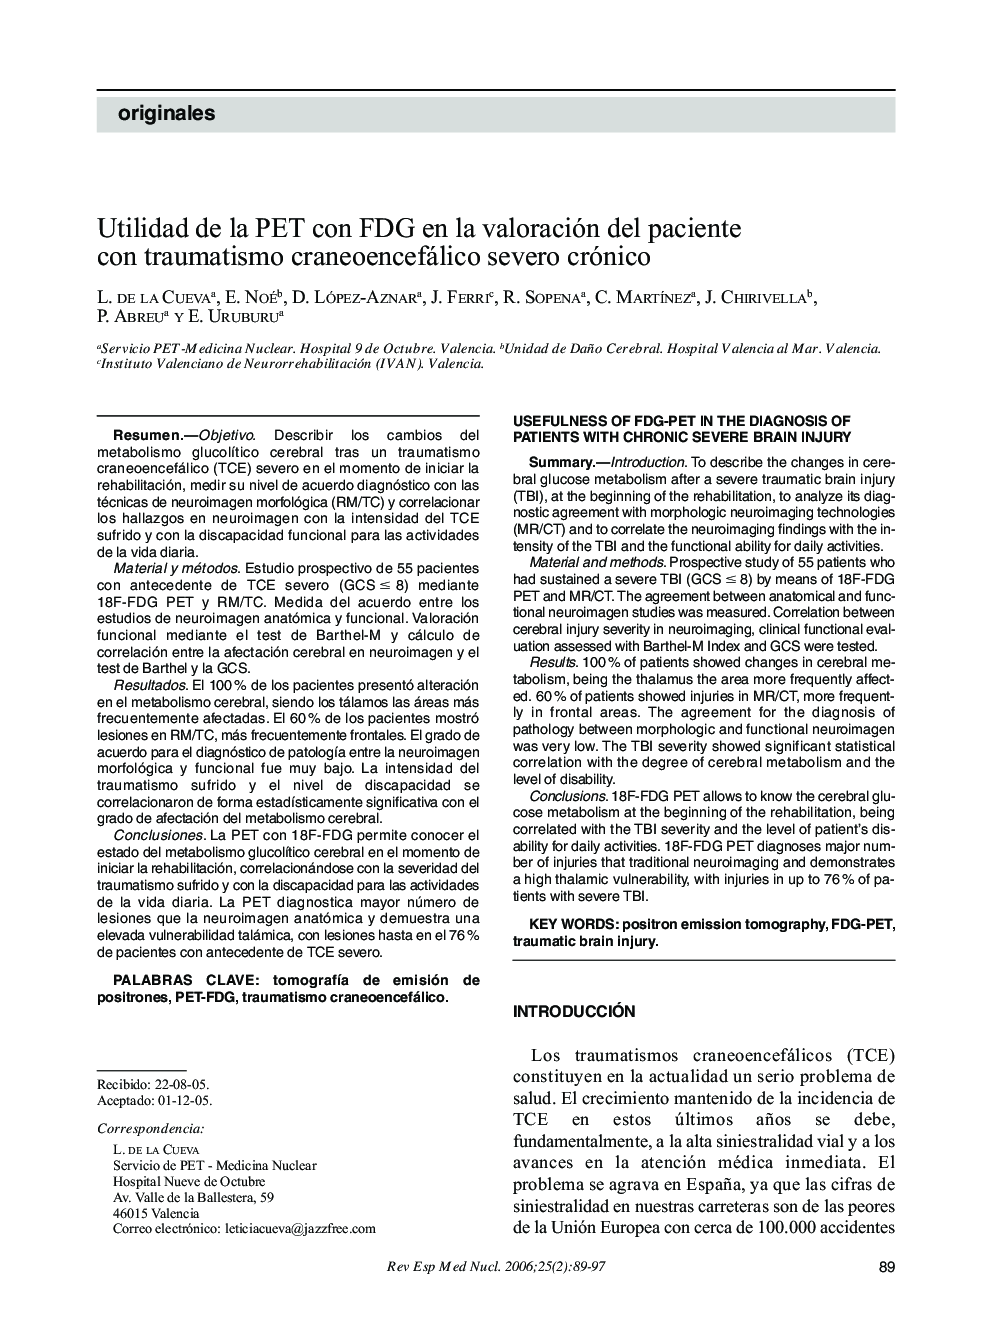 Utilidad de la PET con FDG en la valoración del paciente con traumatismo craneoencefálico severo crónico